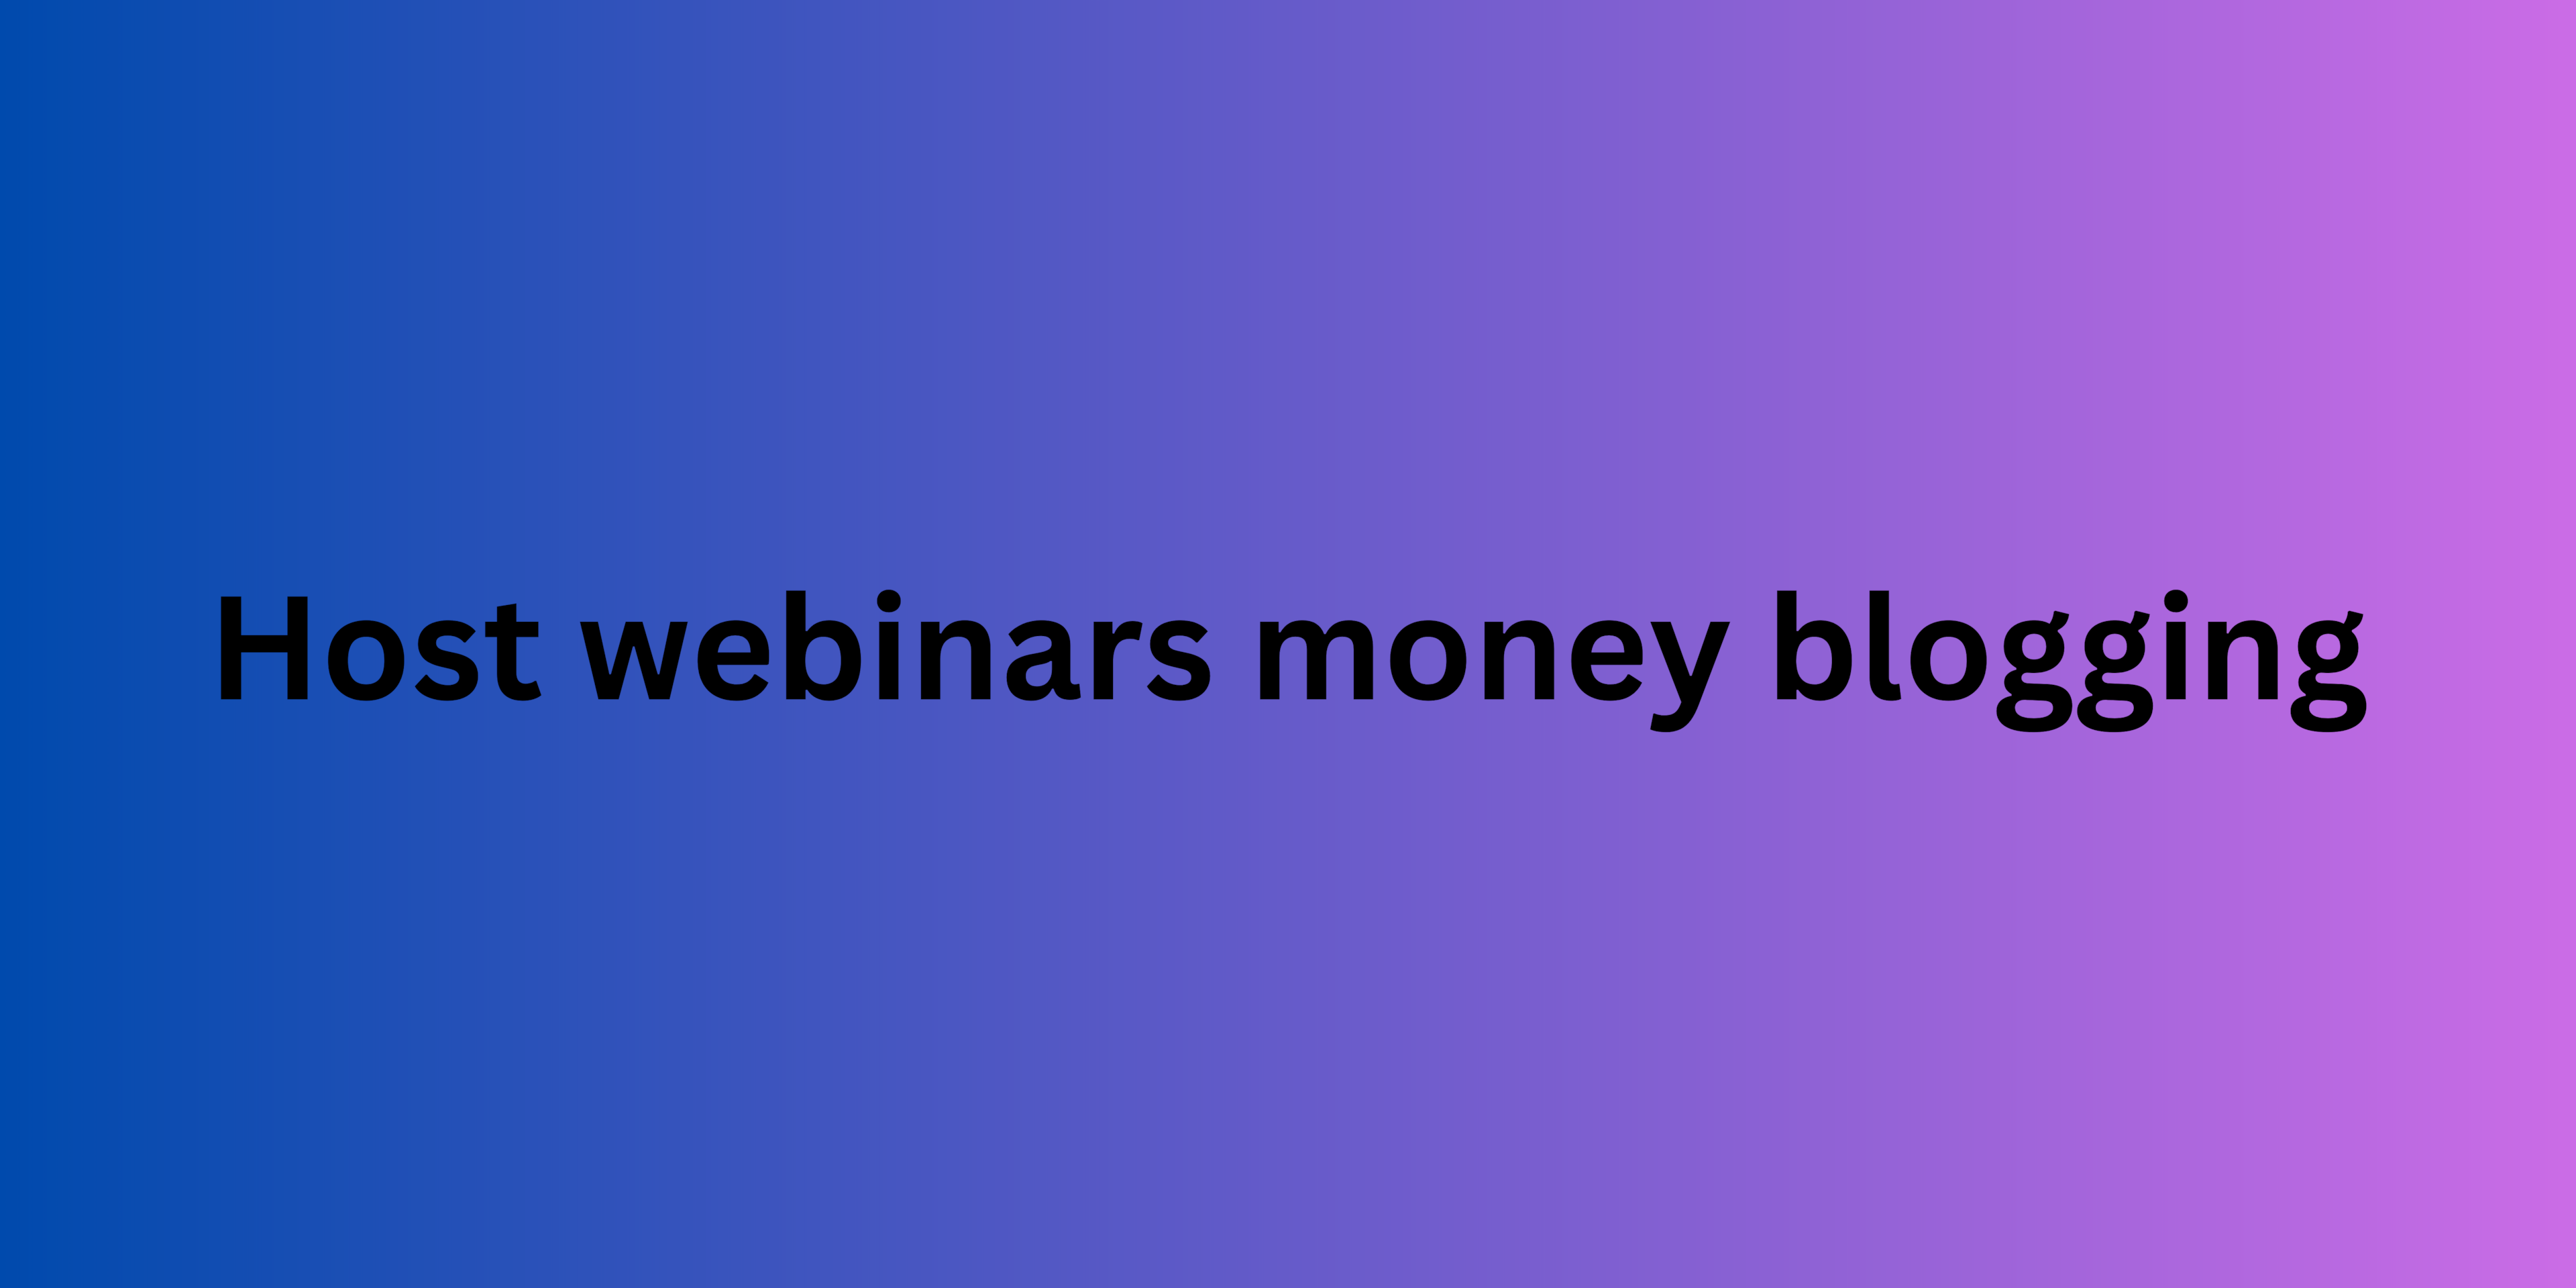 Host webinars money blogging